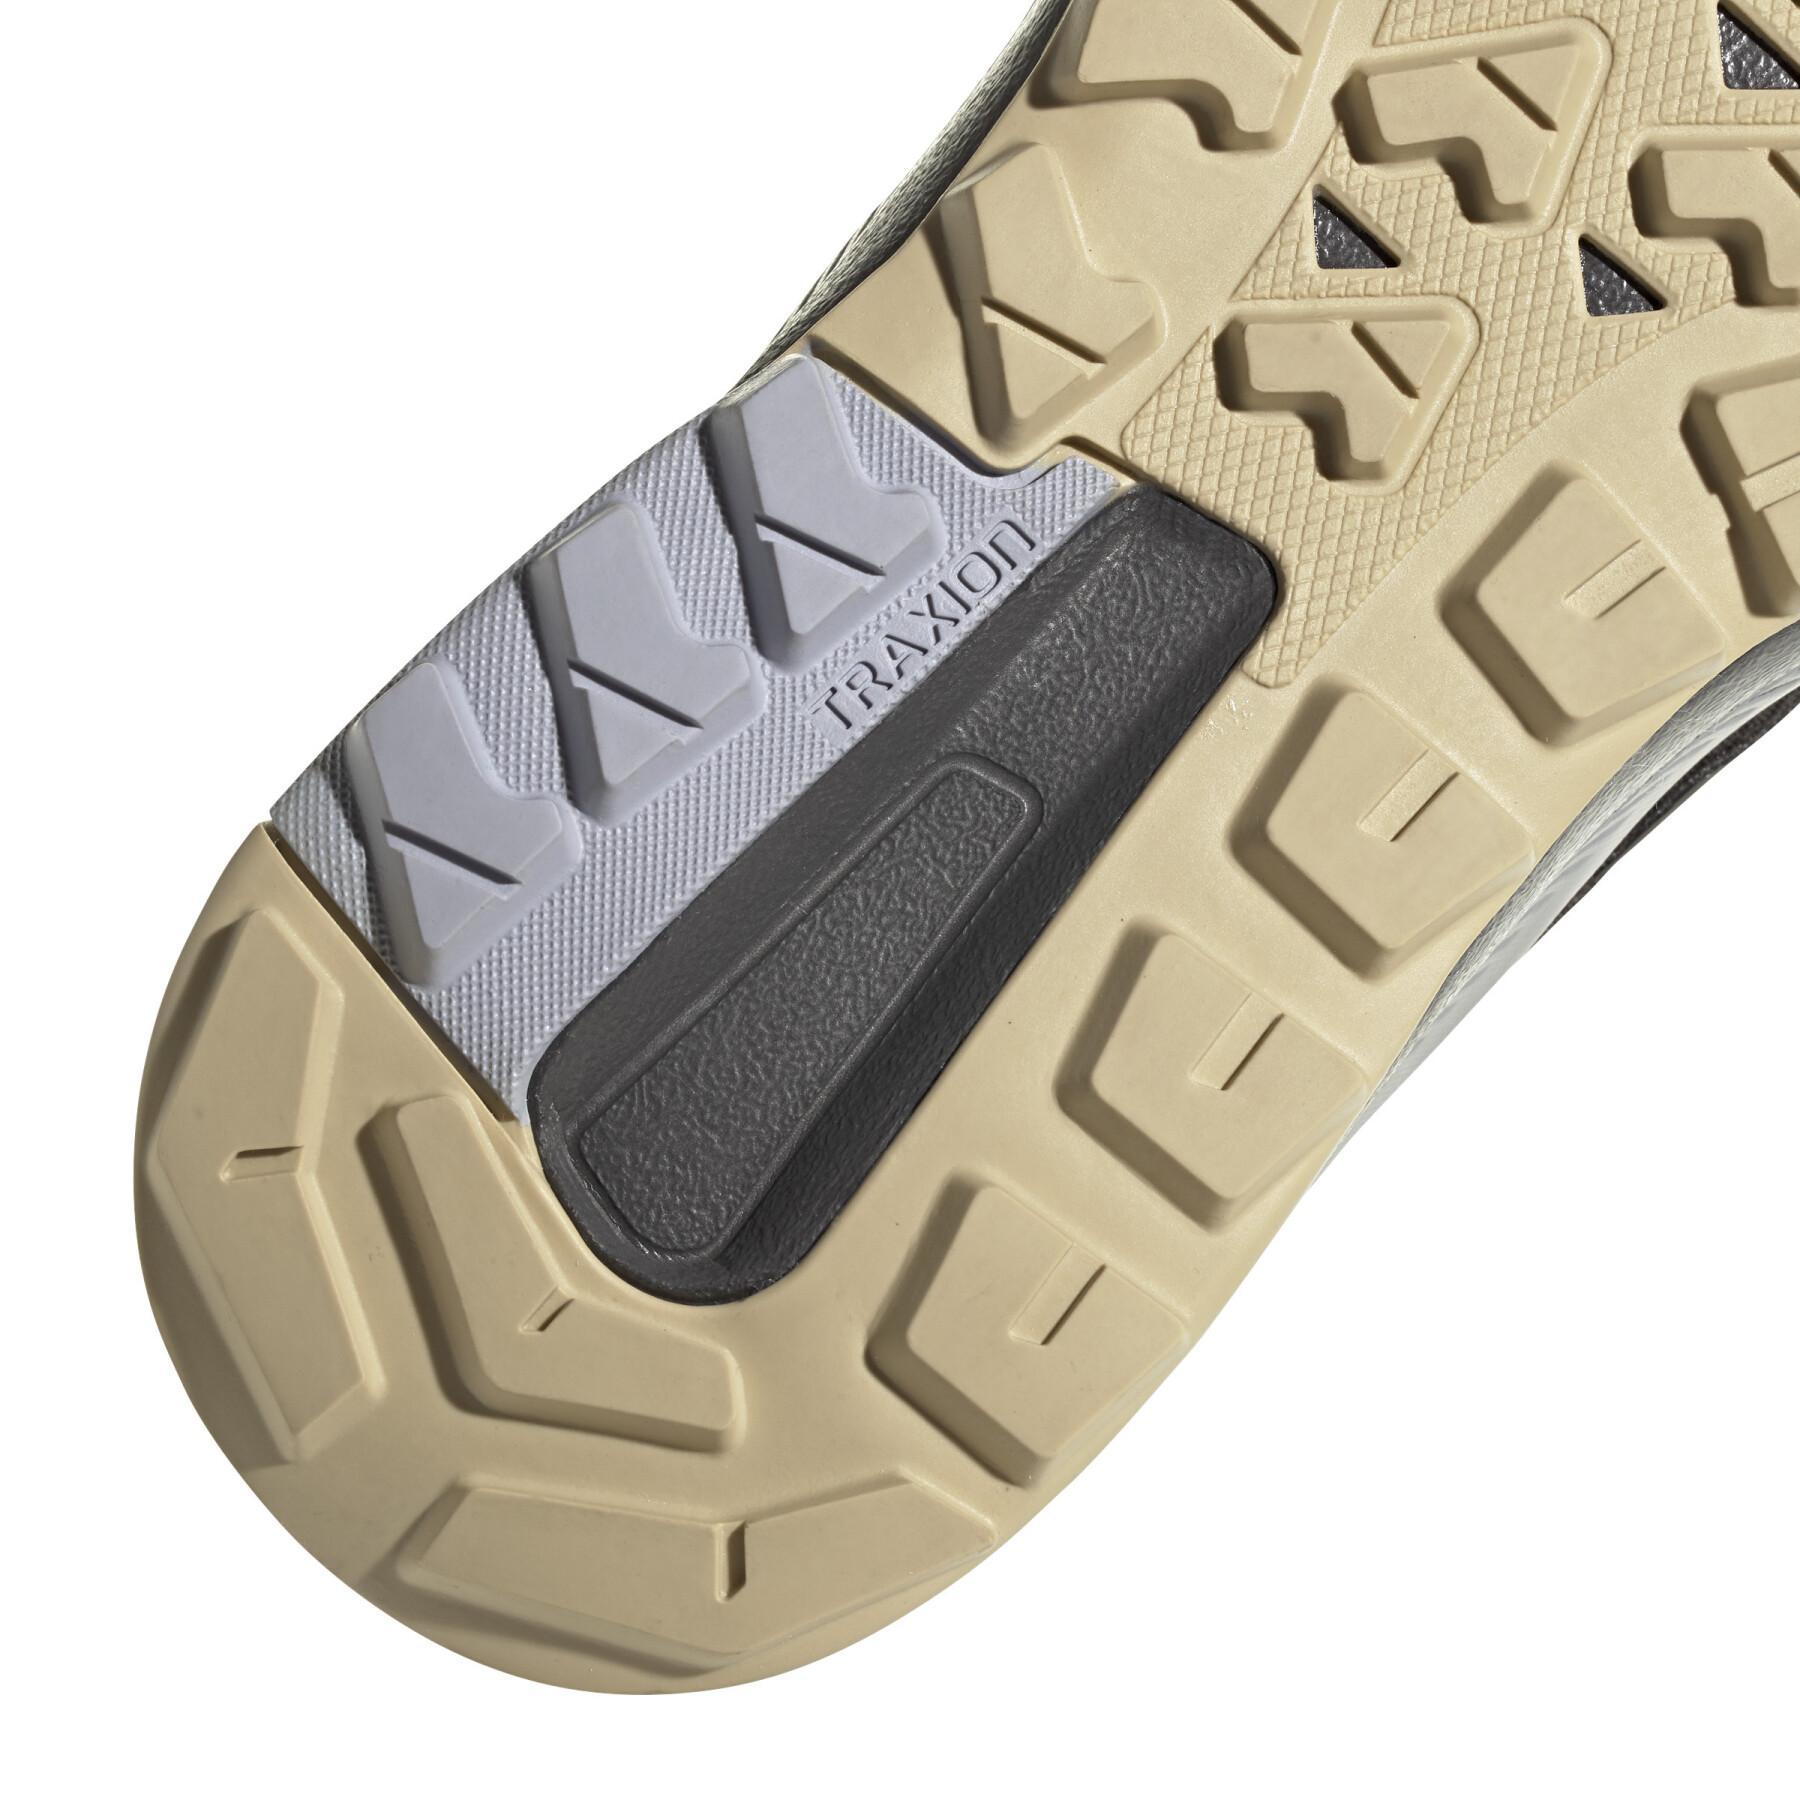 Damskie buty turystyczne adidas Terrex Trailmaker Gore-Tex